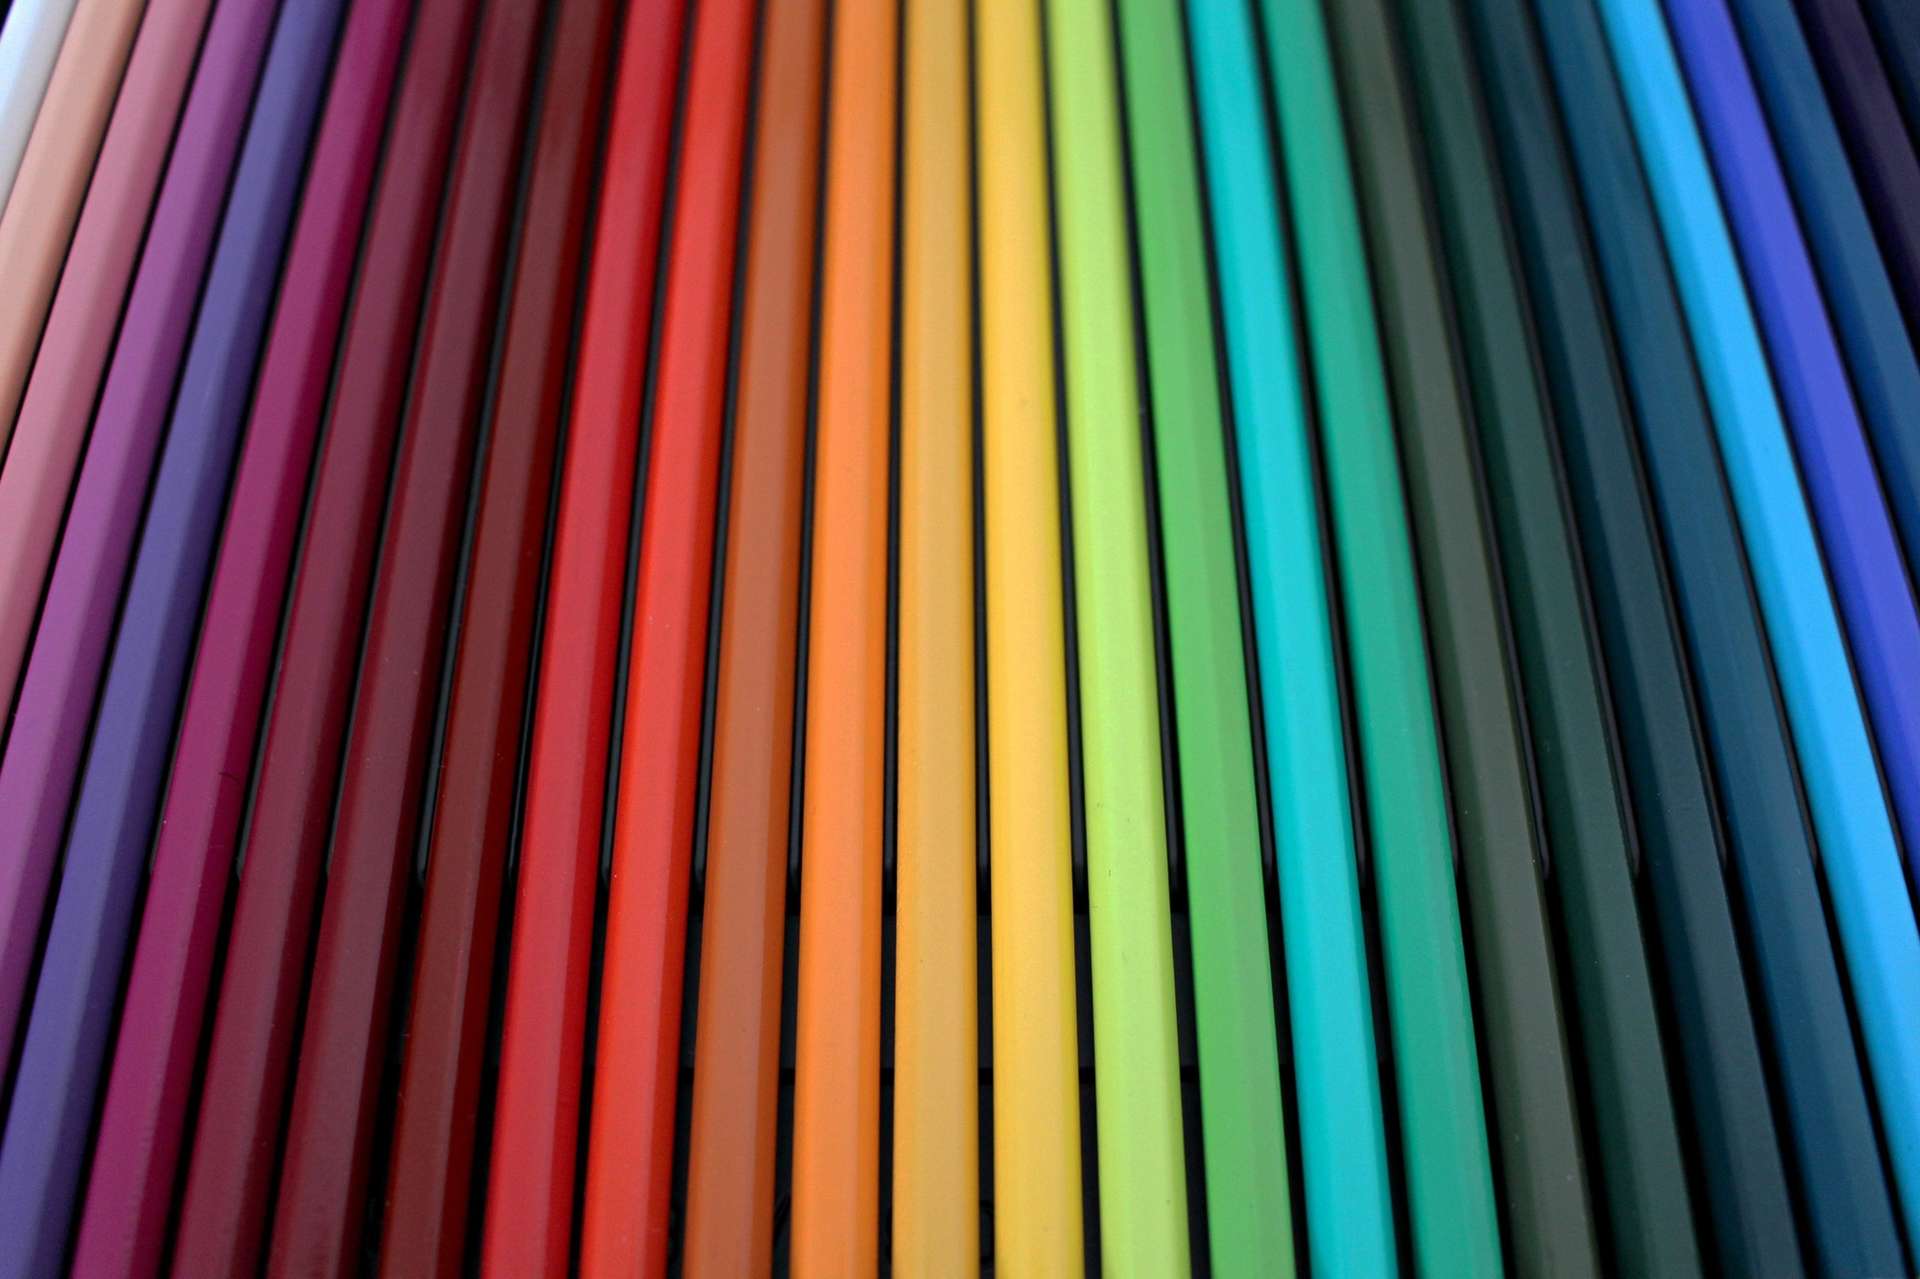 Multicolour pencils